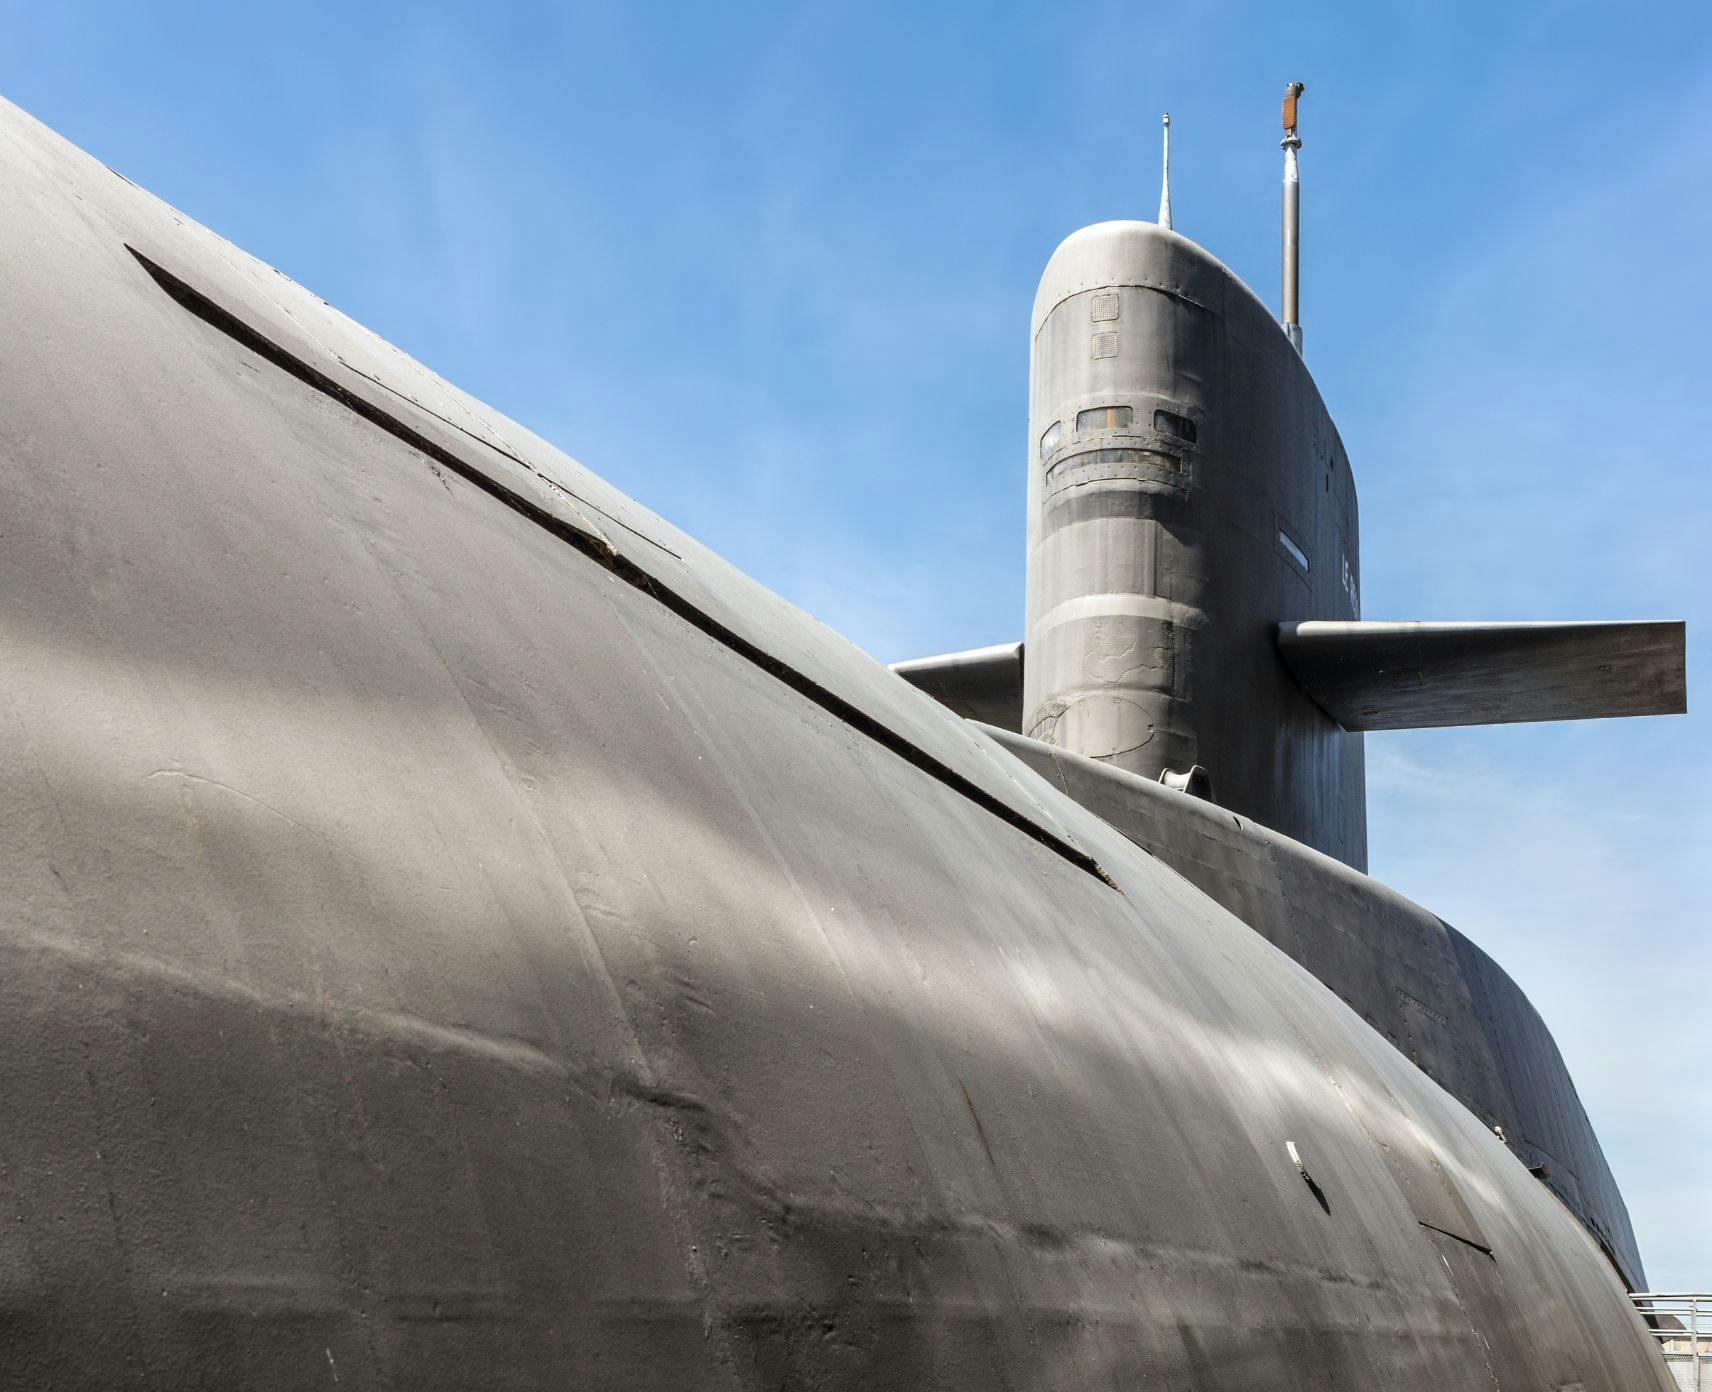 Top half of a nuclear submarine against a blue sky.